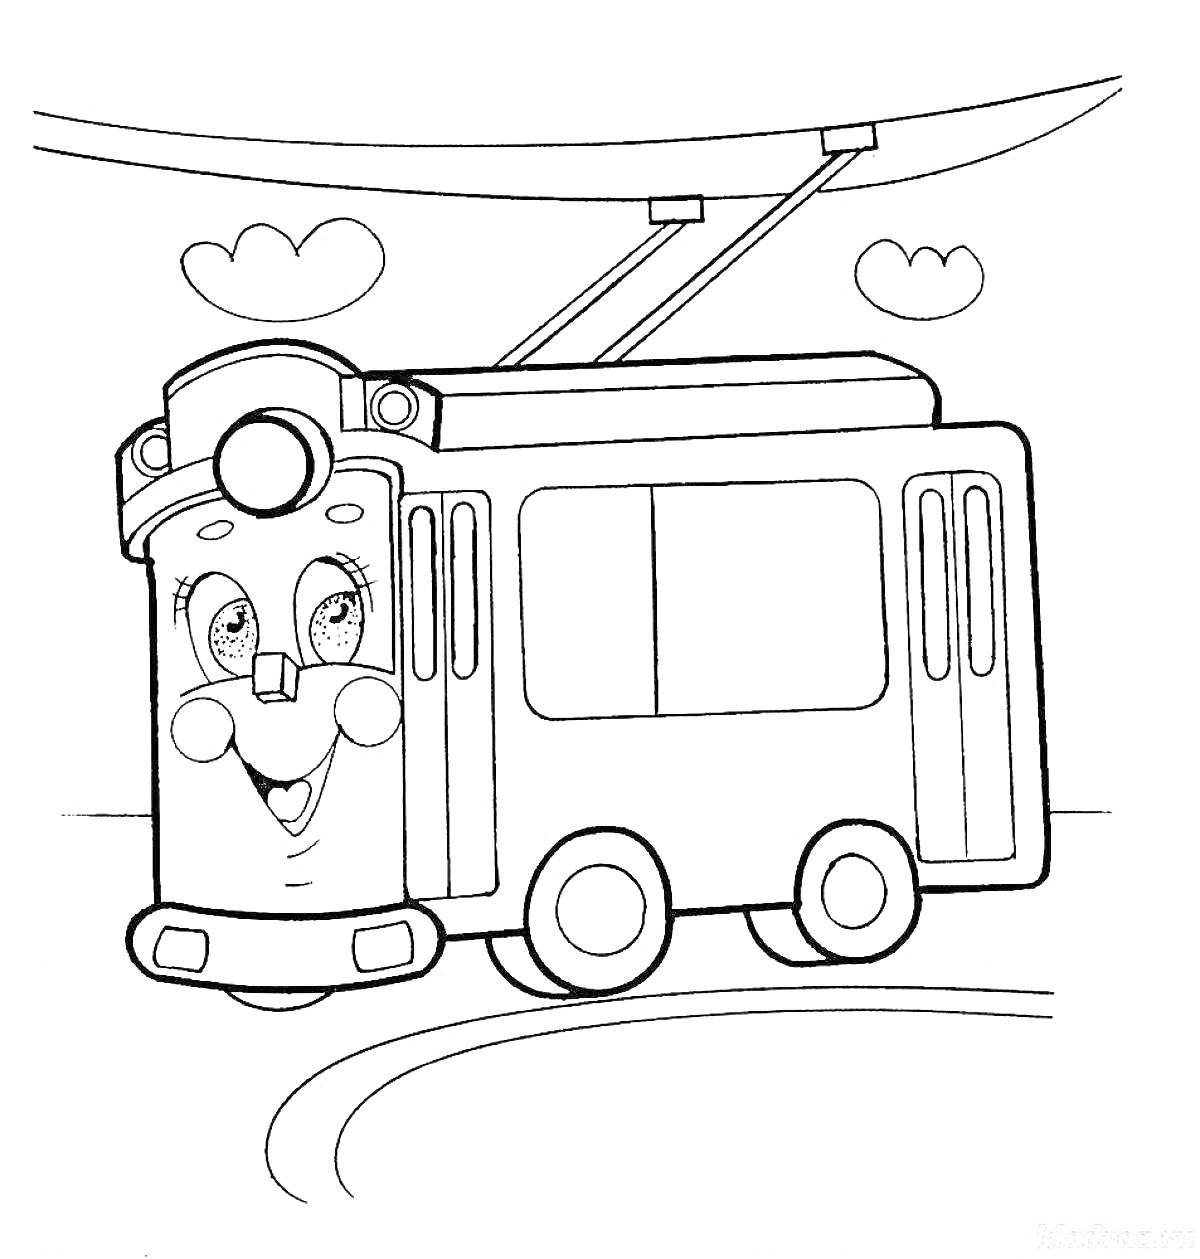 Раскраска Веселый троллейбус с улыбающимся лицом, провода, облака